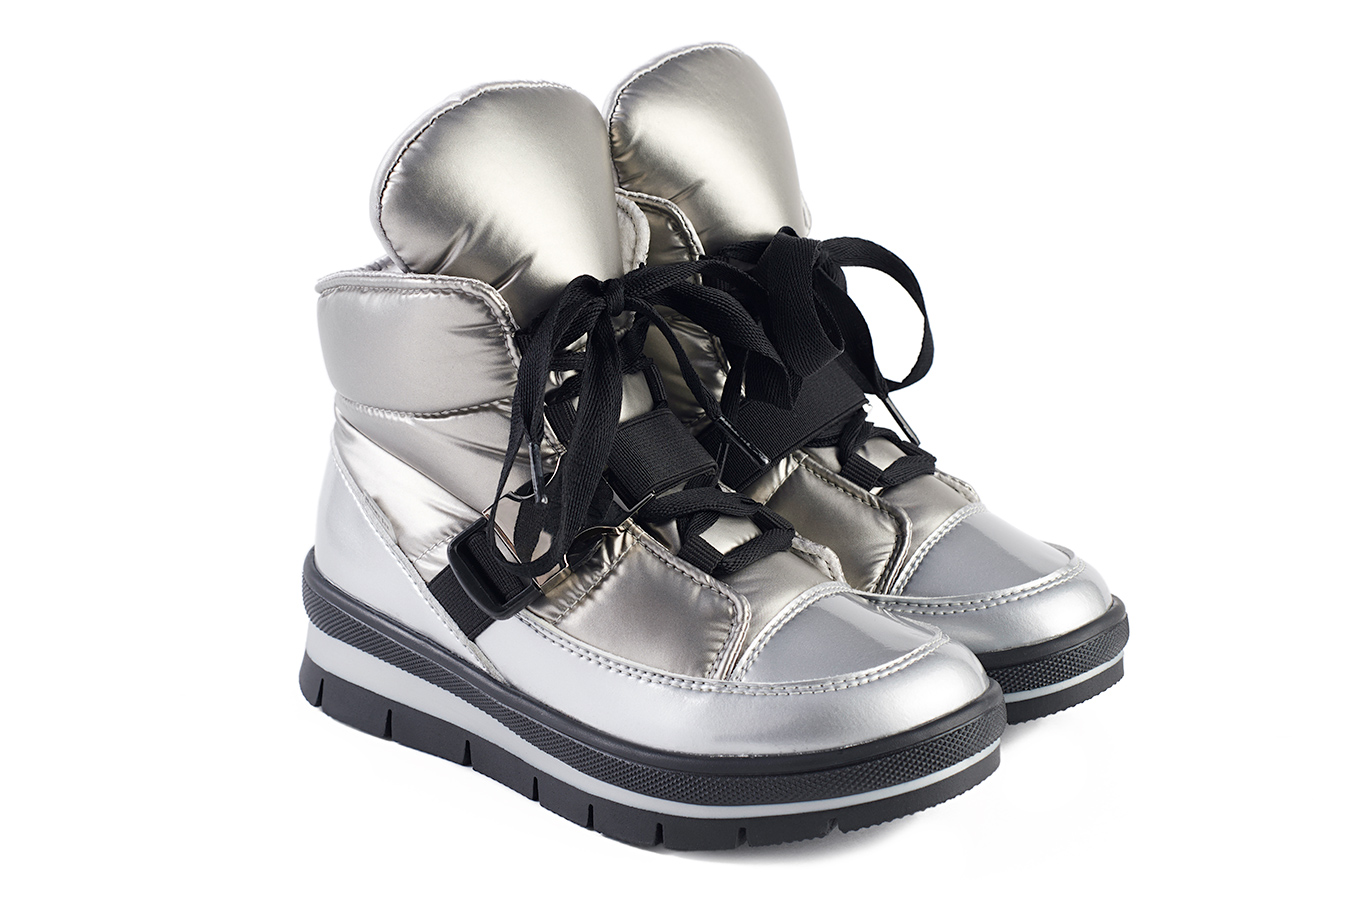 ботинки 14052R серебряный балтико, фото 2